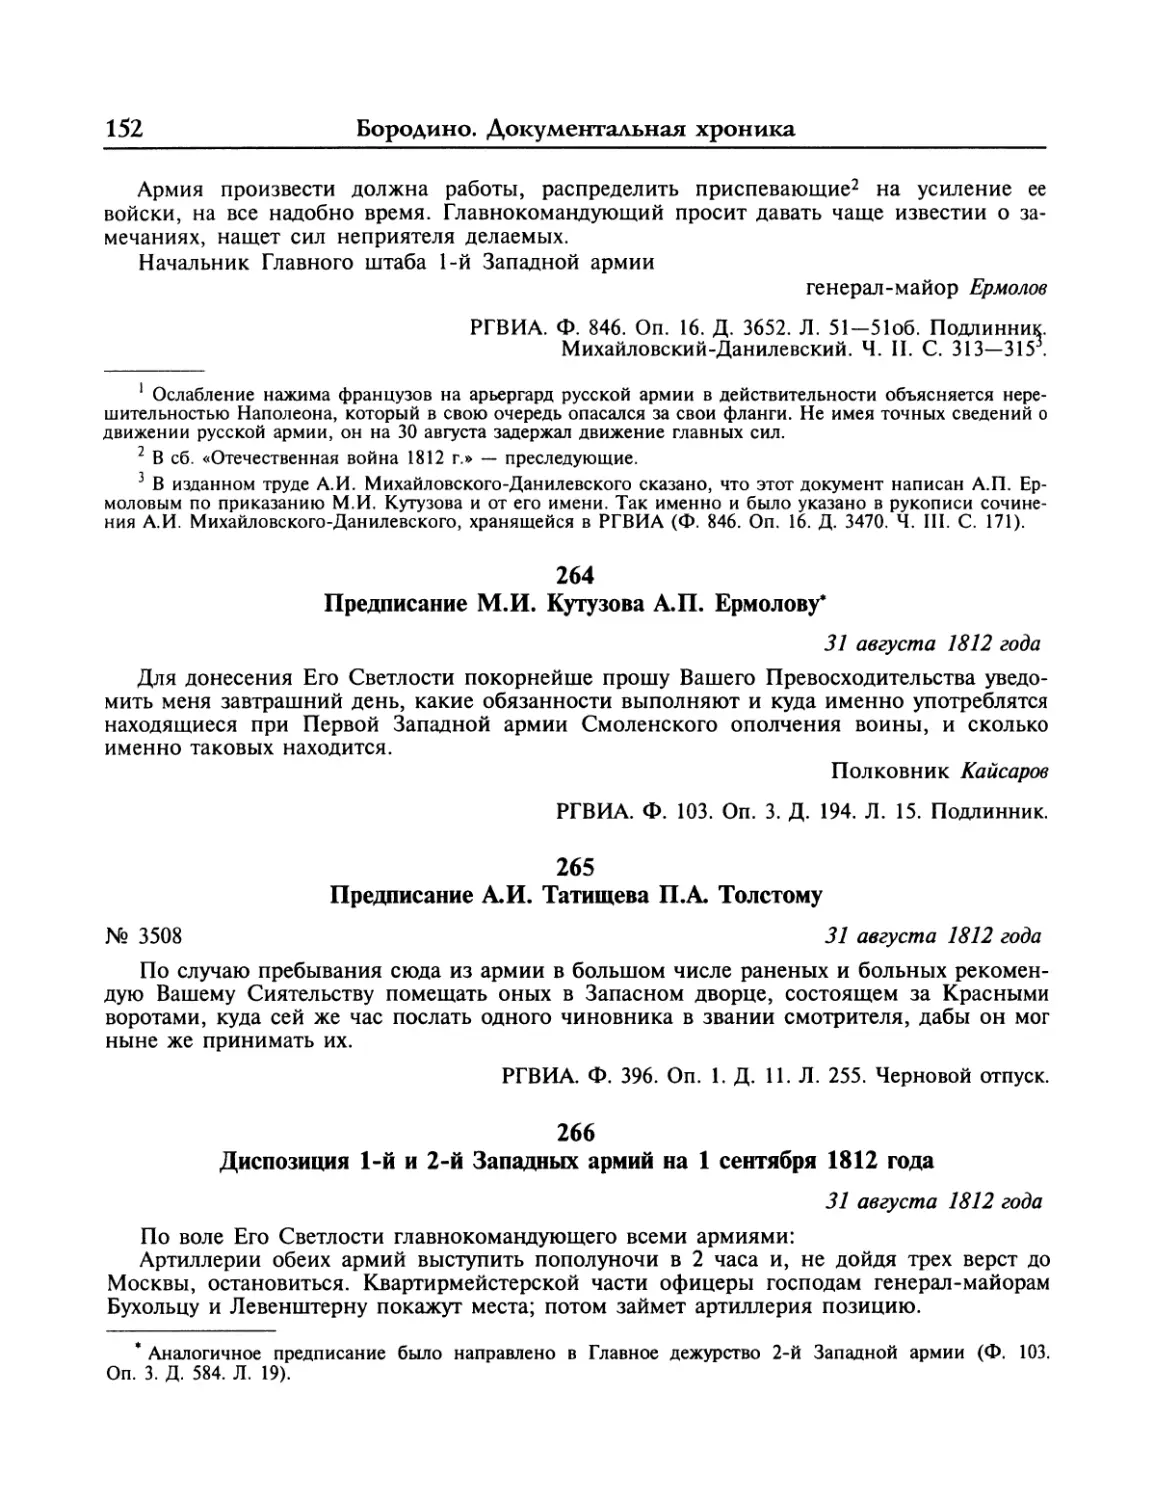 Предписание М.И.Кутузова А.П.Ермолову
Предписание А.И.Татищева П.А.Толстому
Диспозиция 1-й и 2-й Западный армий на 1 сентября 1812 года